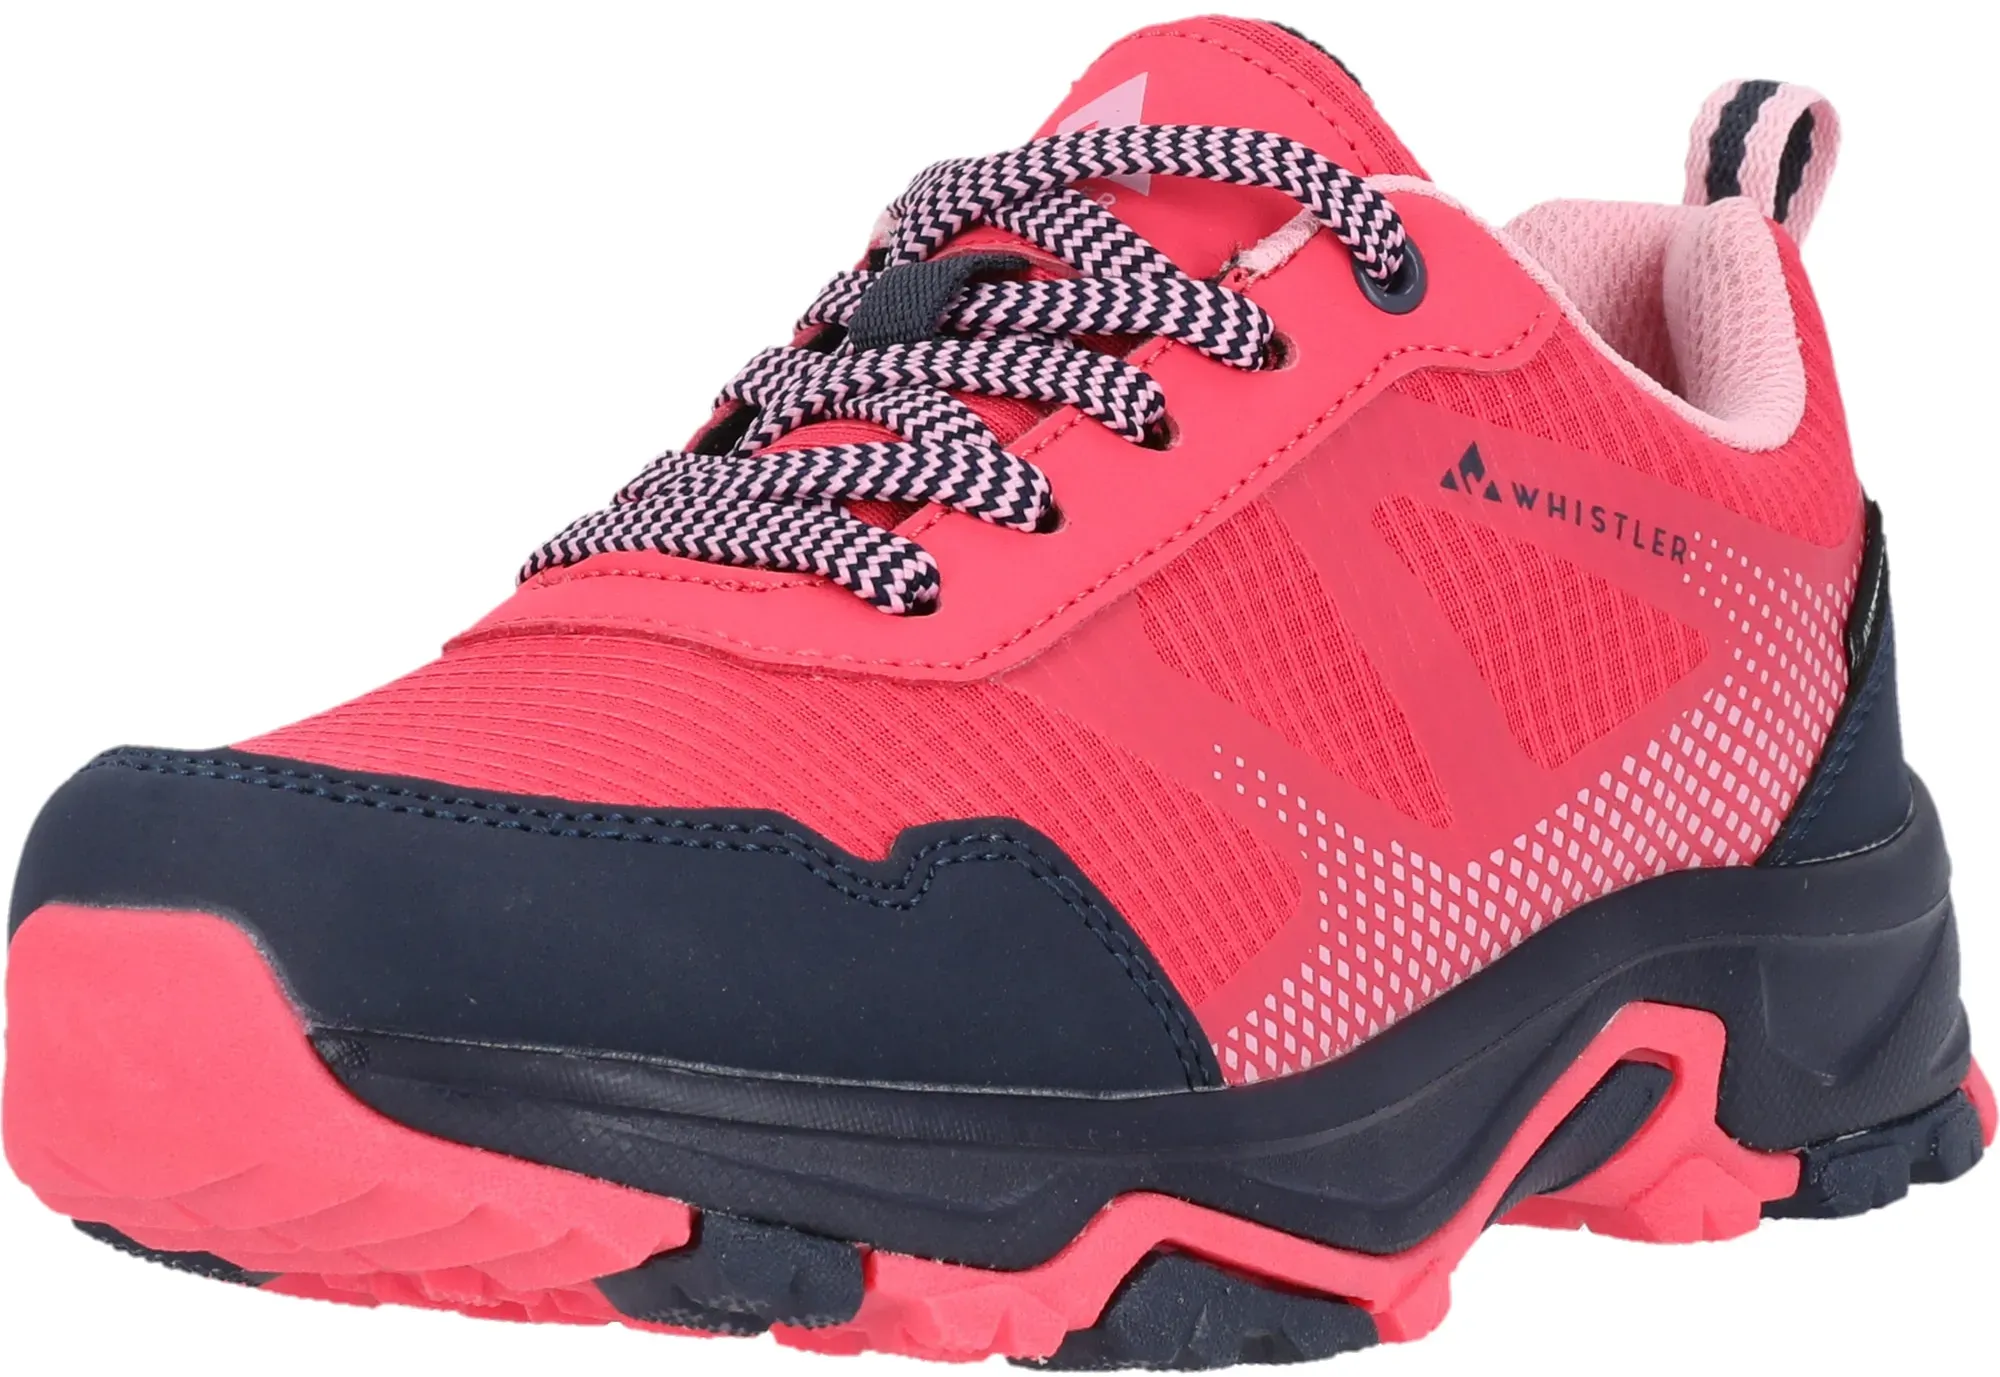 Trainingsschuh WHISTLER "Famtin" Gr. 38, pink (pink, schwarz) Schuhe Damen mit wasserdichter Funktion